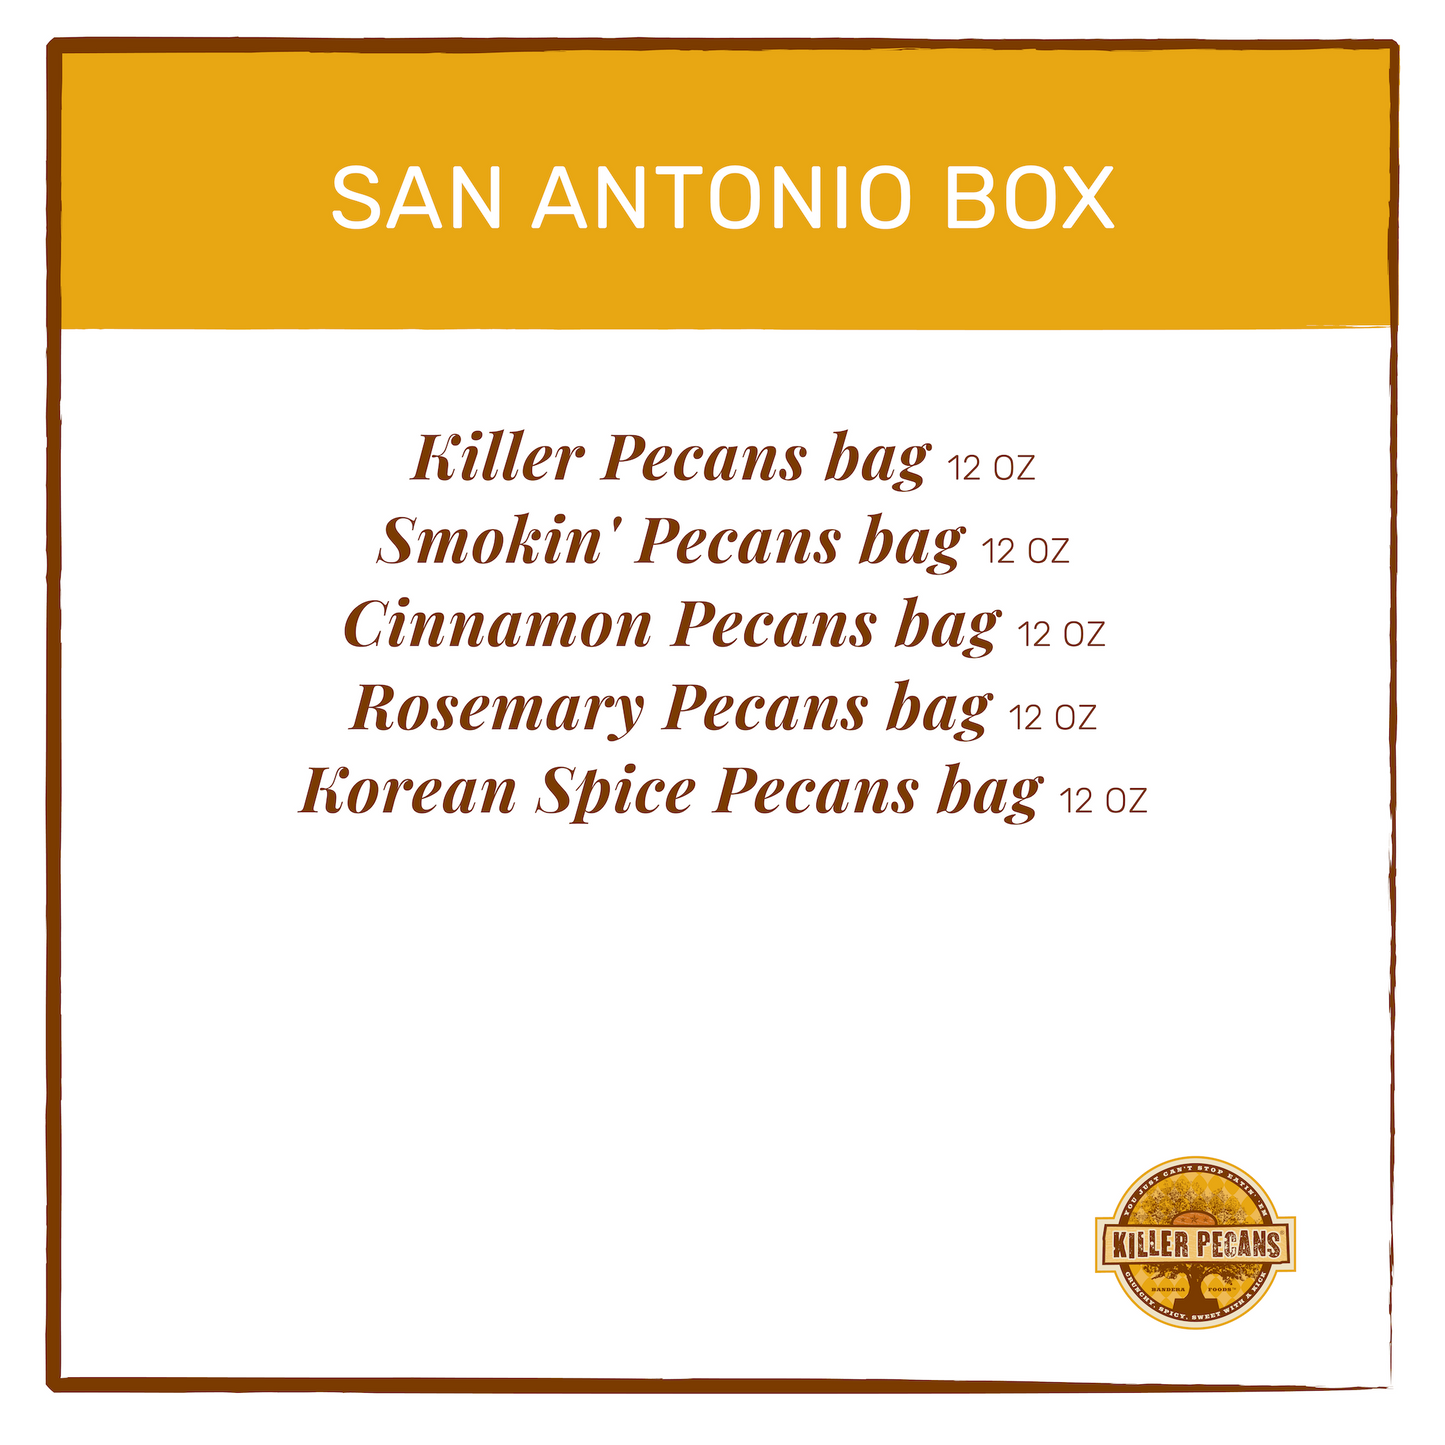 San Antonio Box